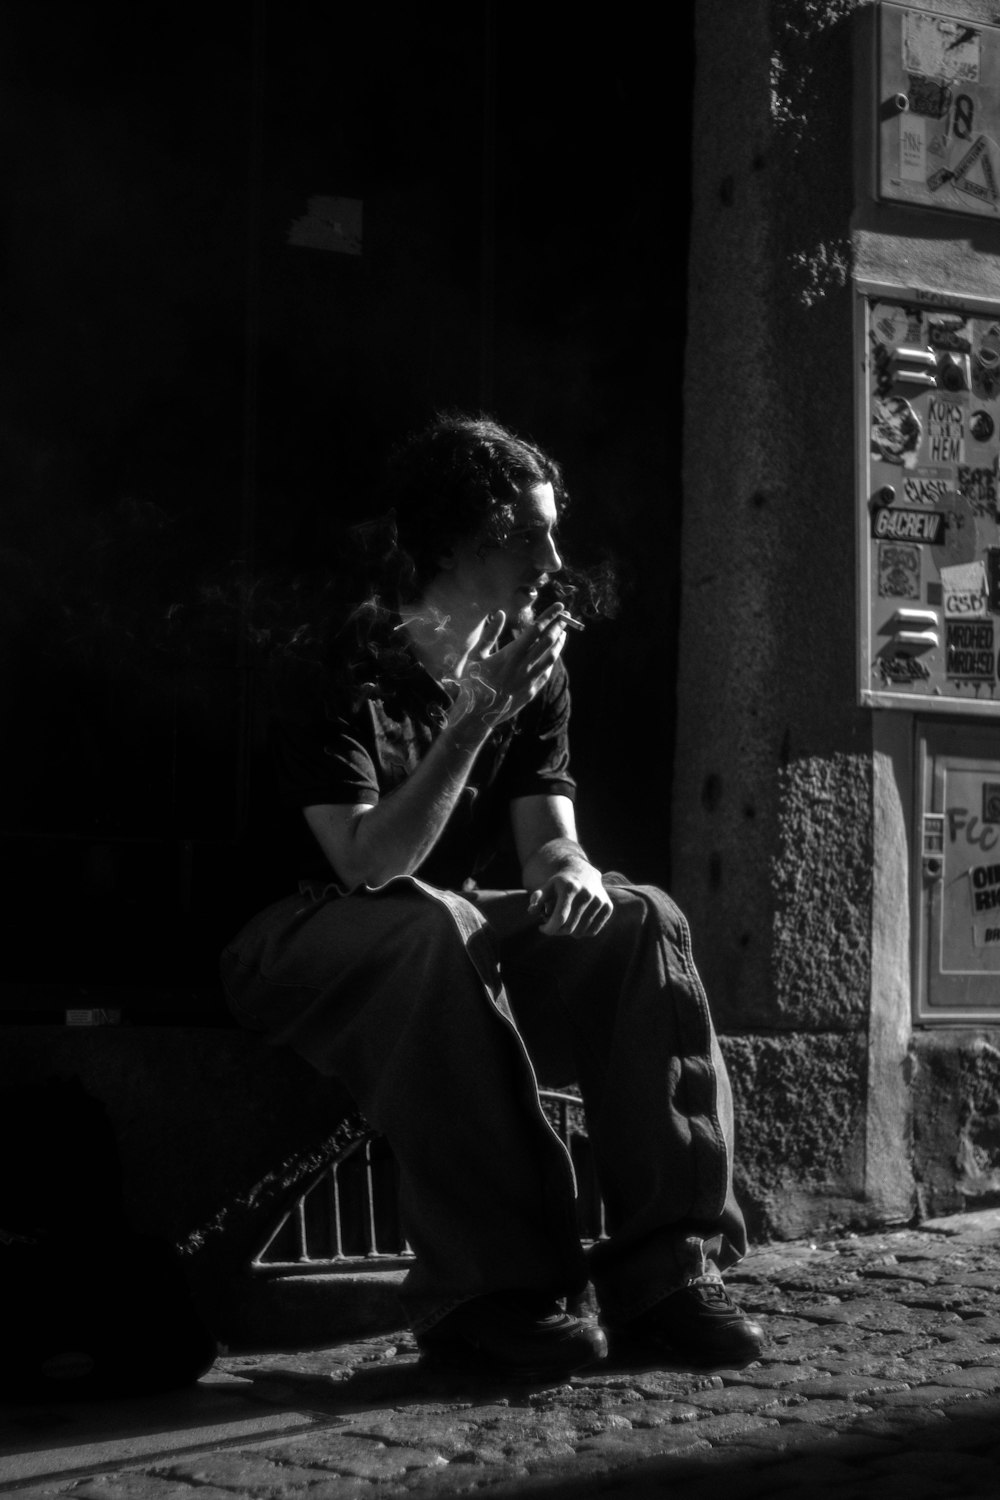 a man sitting on a sidewalk smoking a cigarette